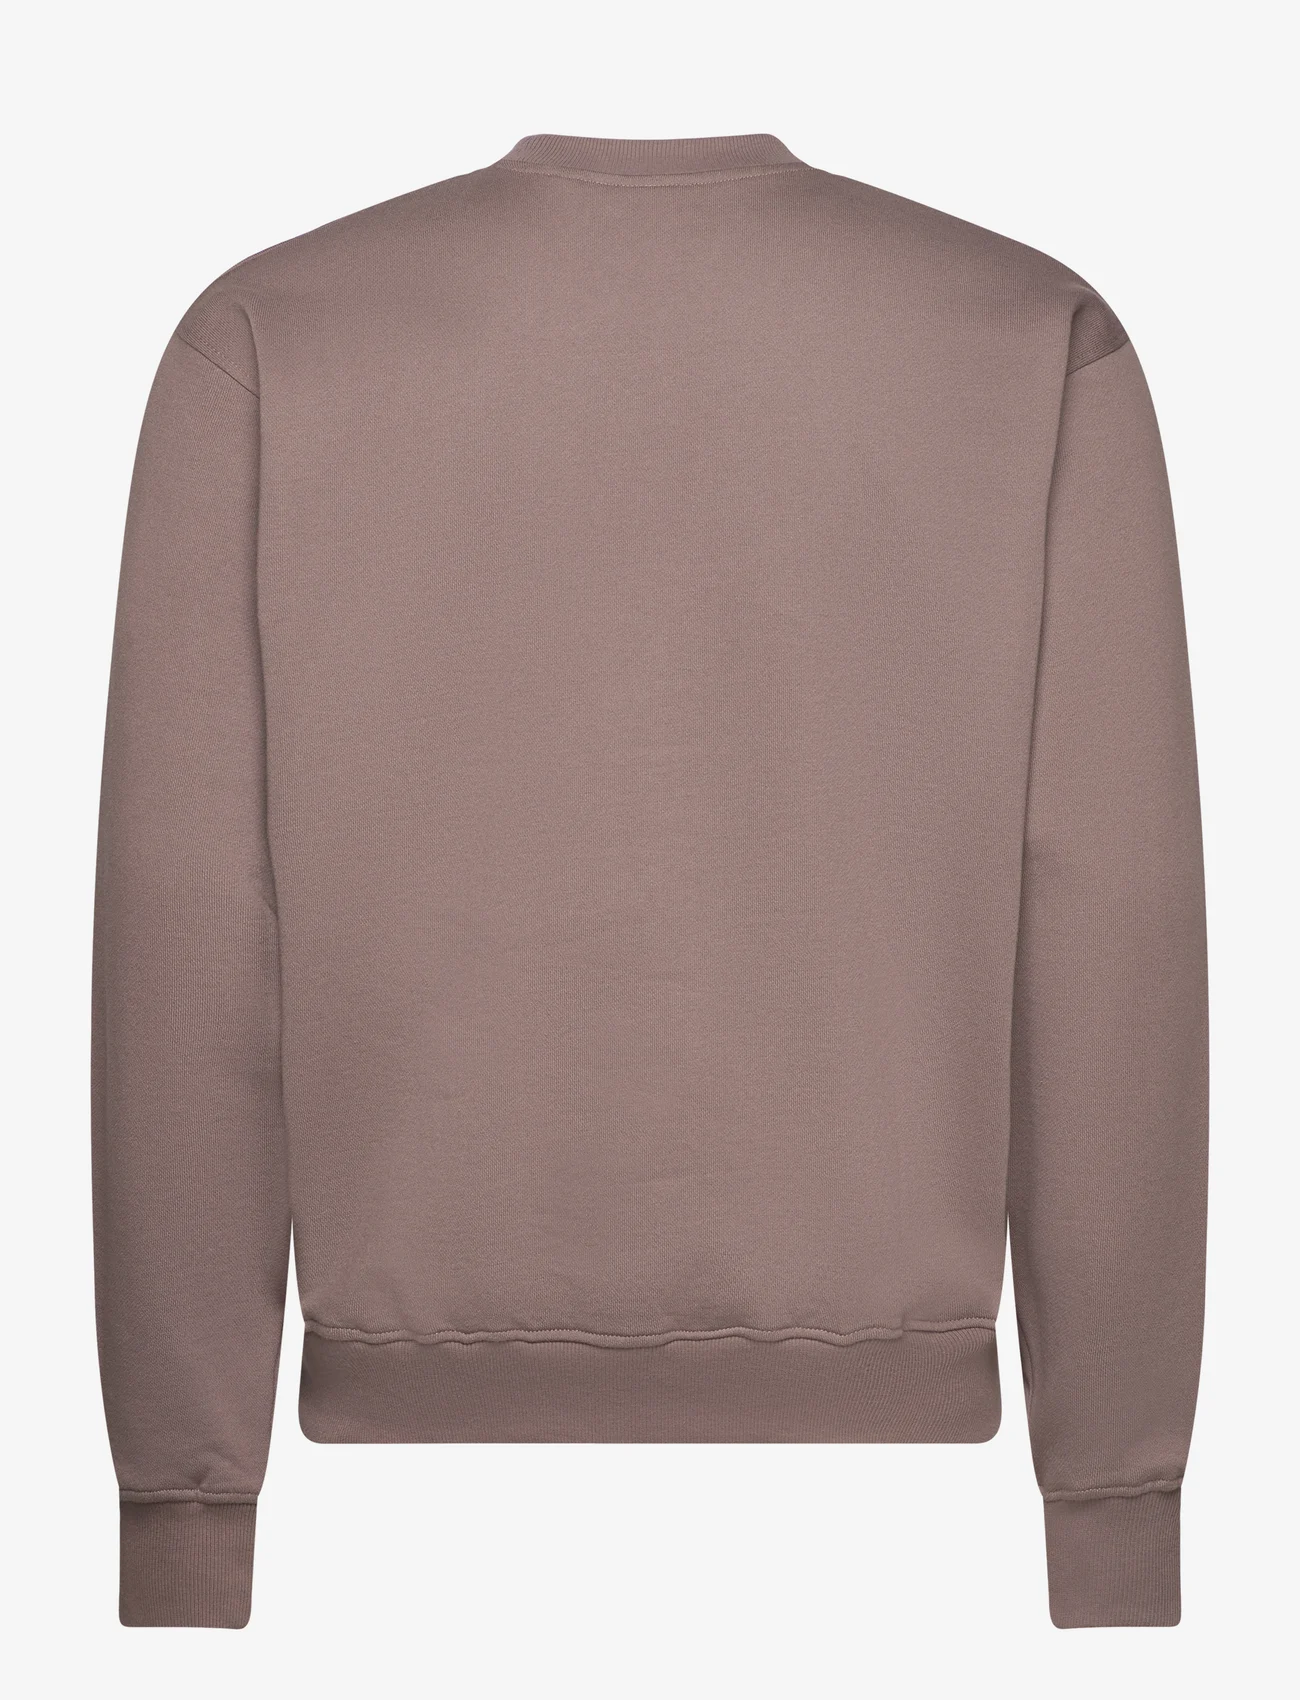 Daily Paper - rashad sweater - sweatshirts - iron taupe - 1